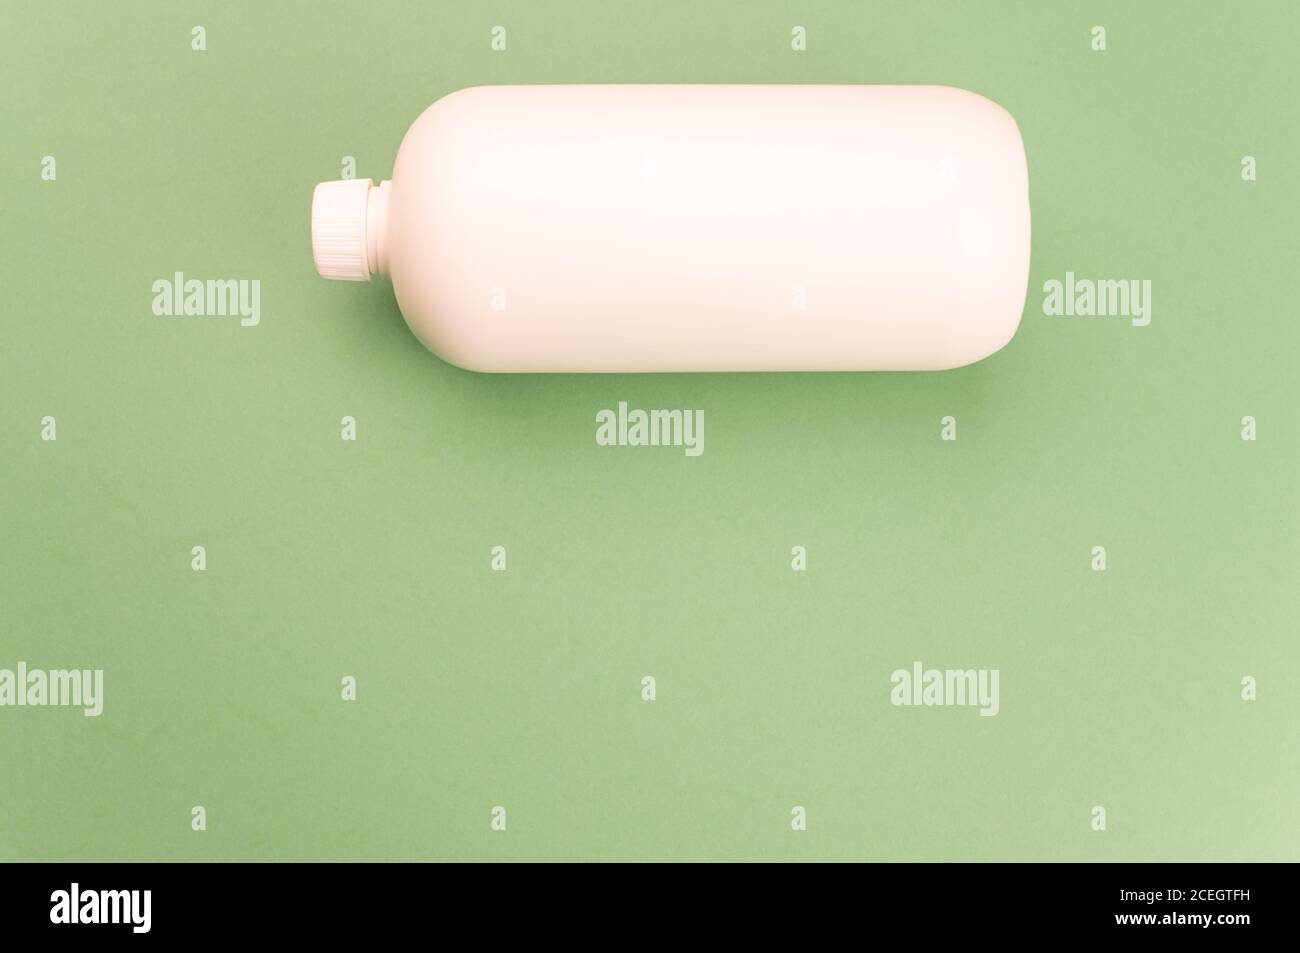 Nahaufnahme eines weißen Plastikbehälters auf einem grünen Oberfläche Stockfoto